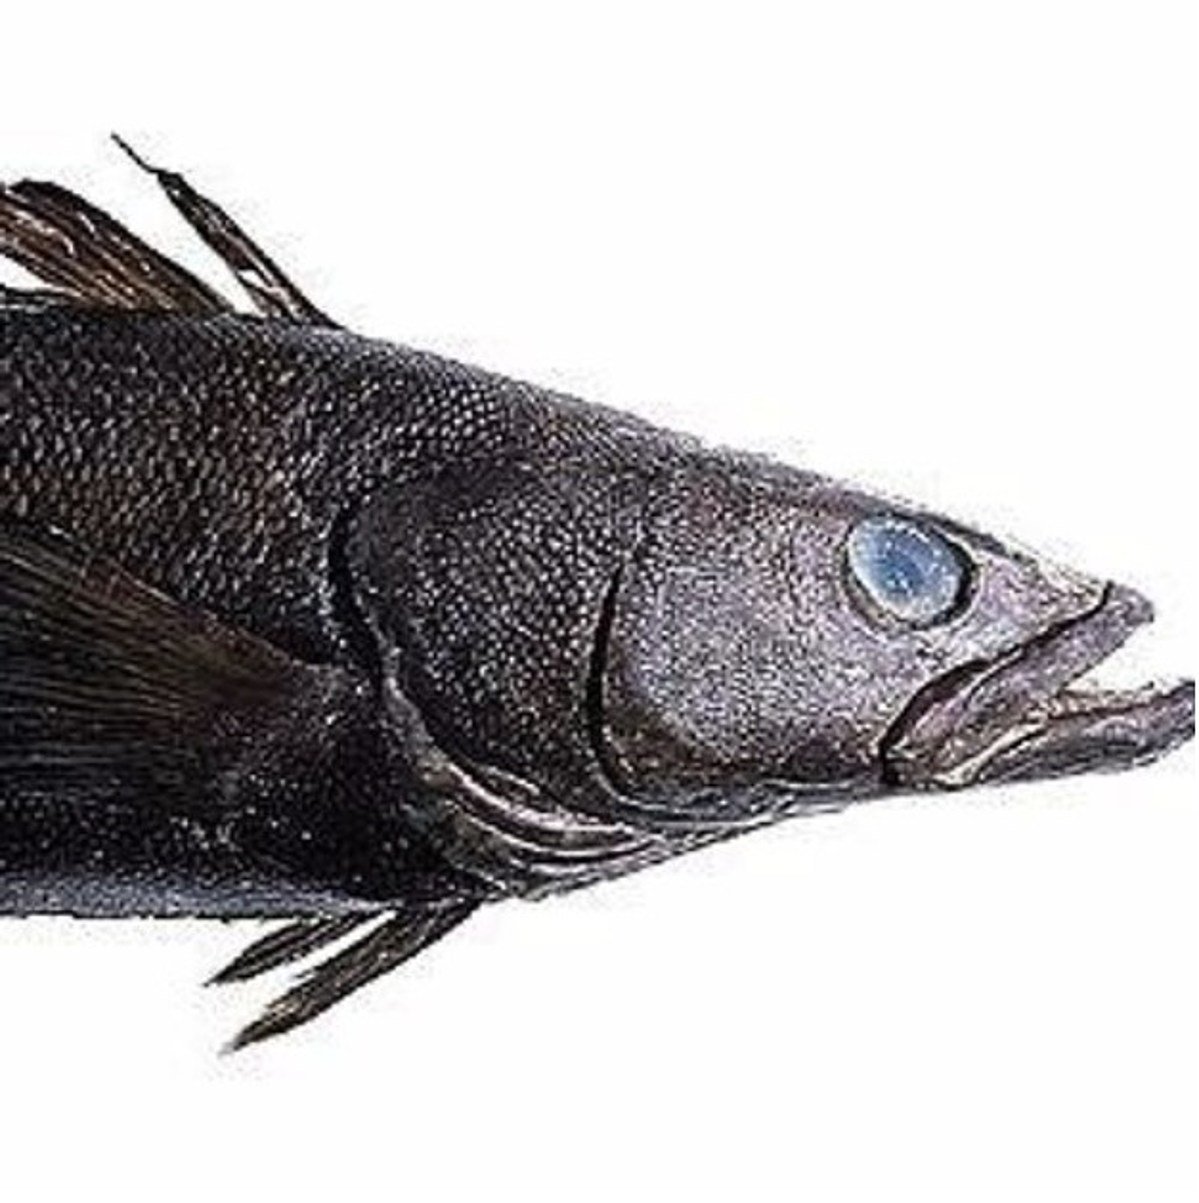 Как выглядит масляная рыба фото с головой